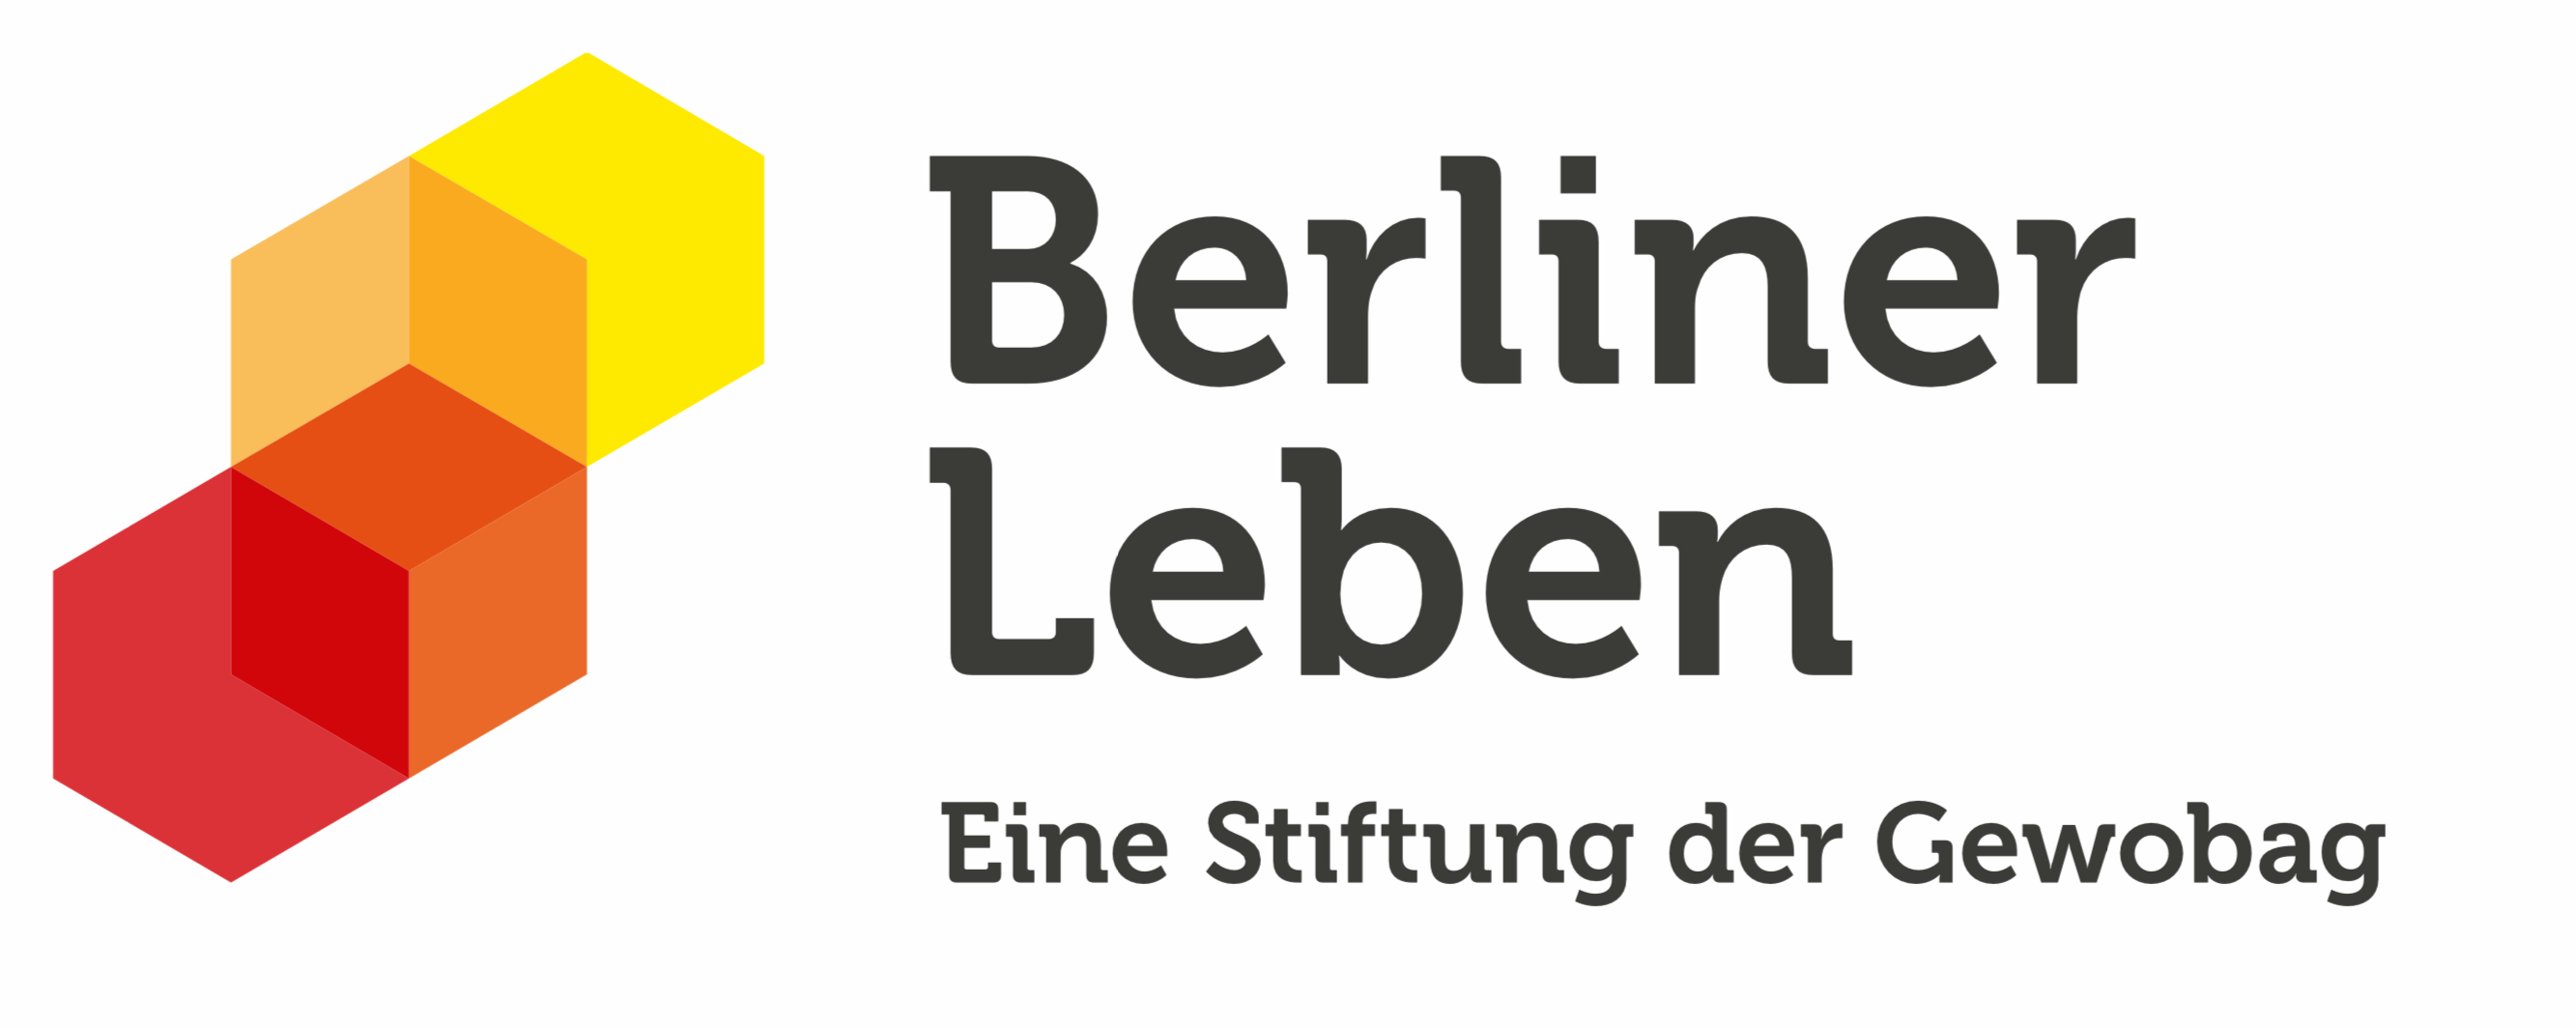 Gefördert durch die Stiftung Berliner Leben